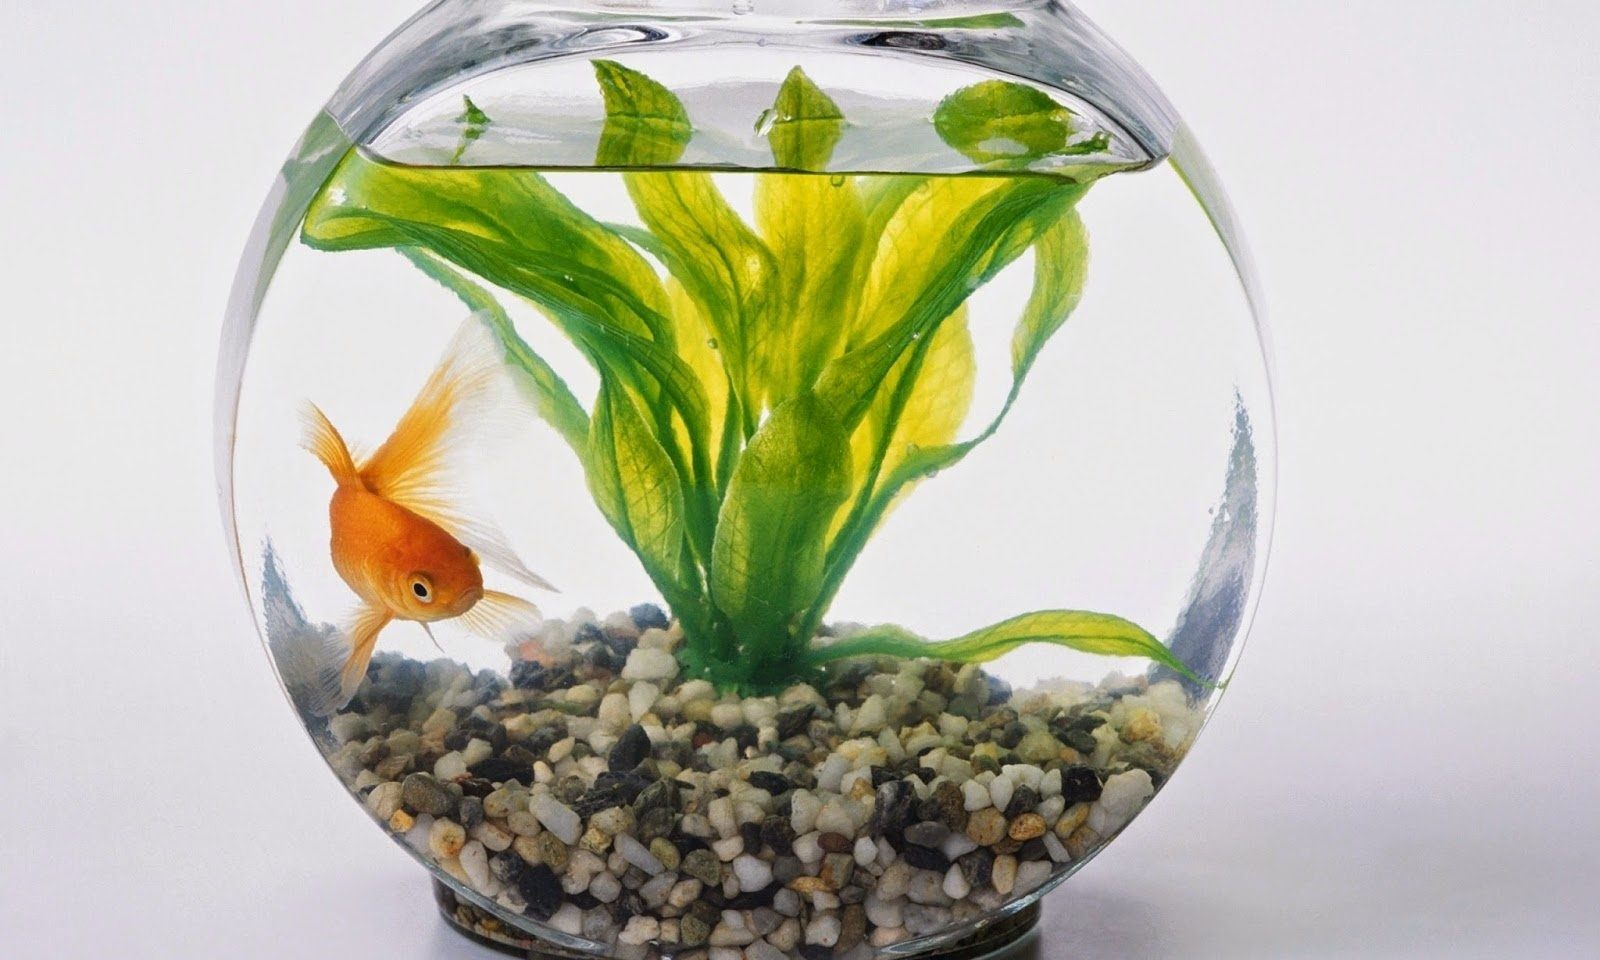 Фото рыбки в аквариуме в круглом аквариуме